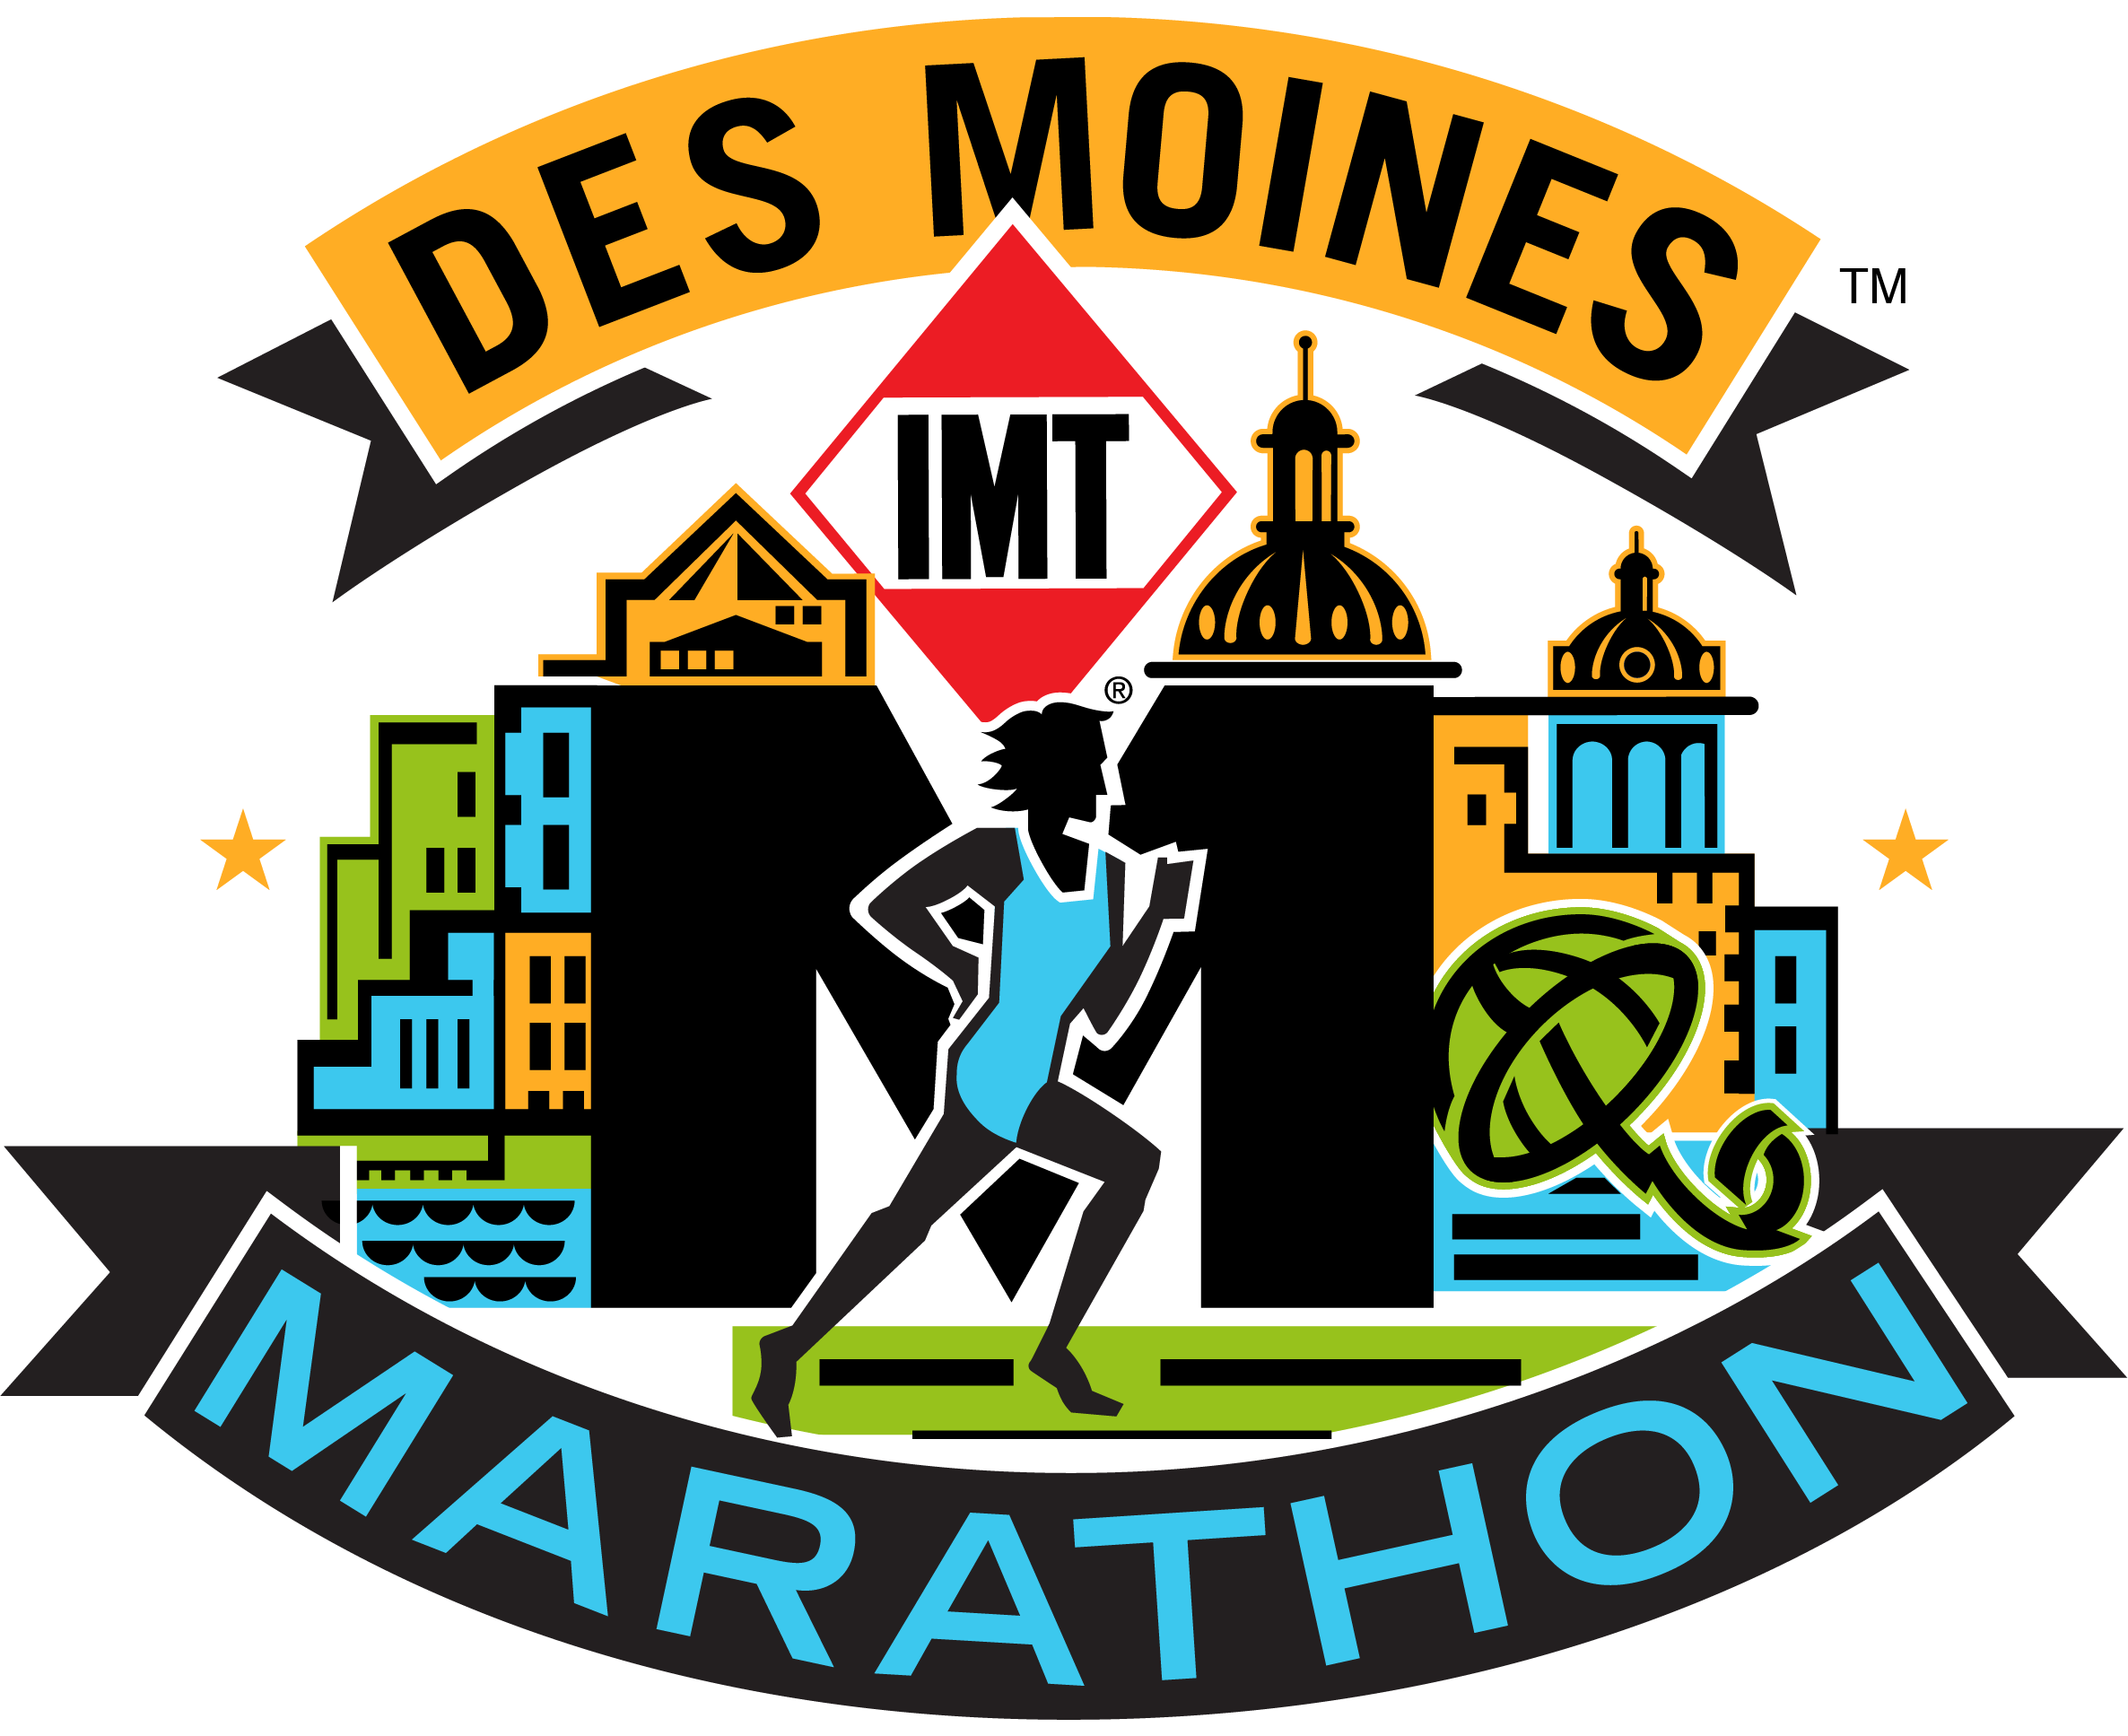 Imt Des Moines Marathon 2018 (2372x1935)